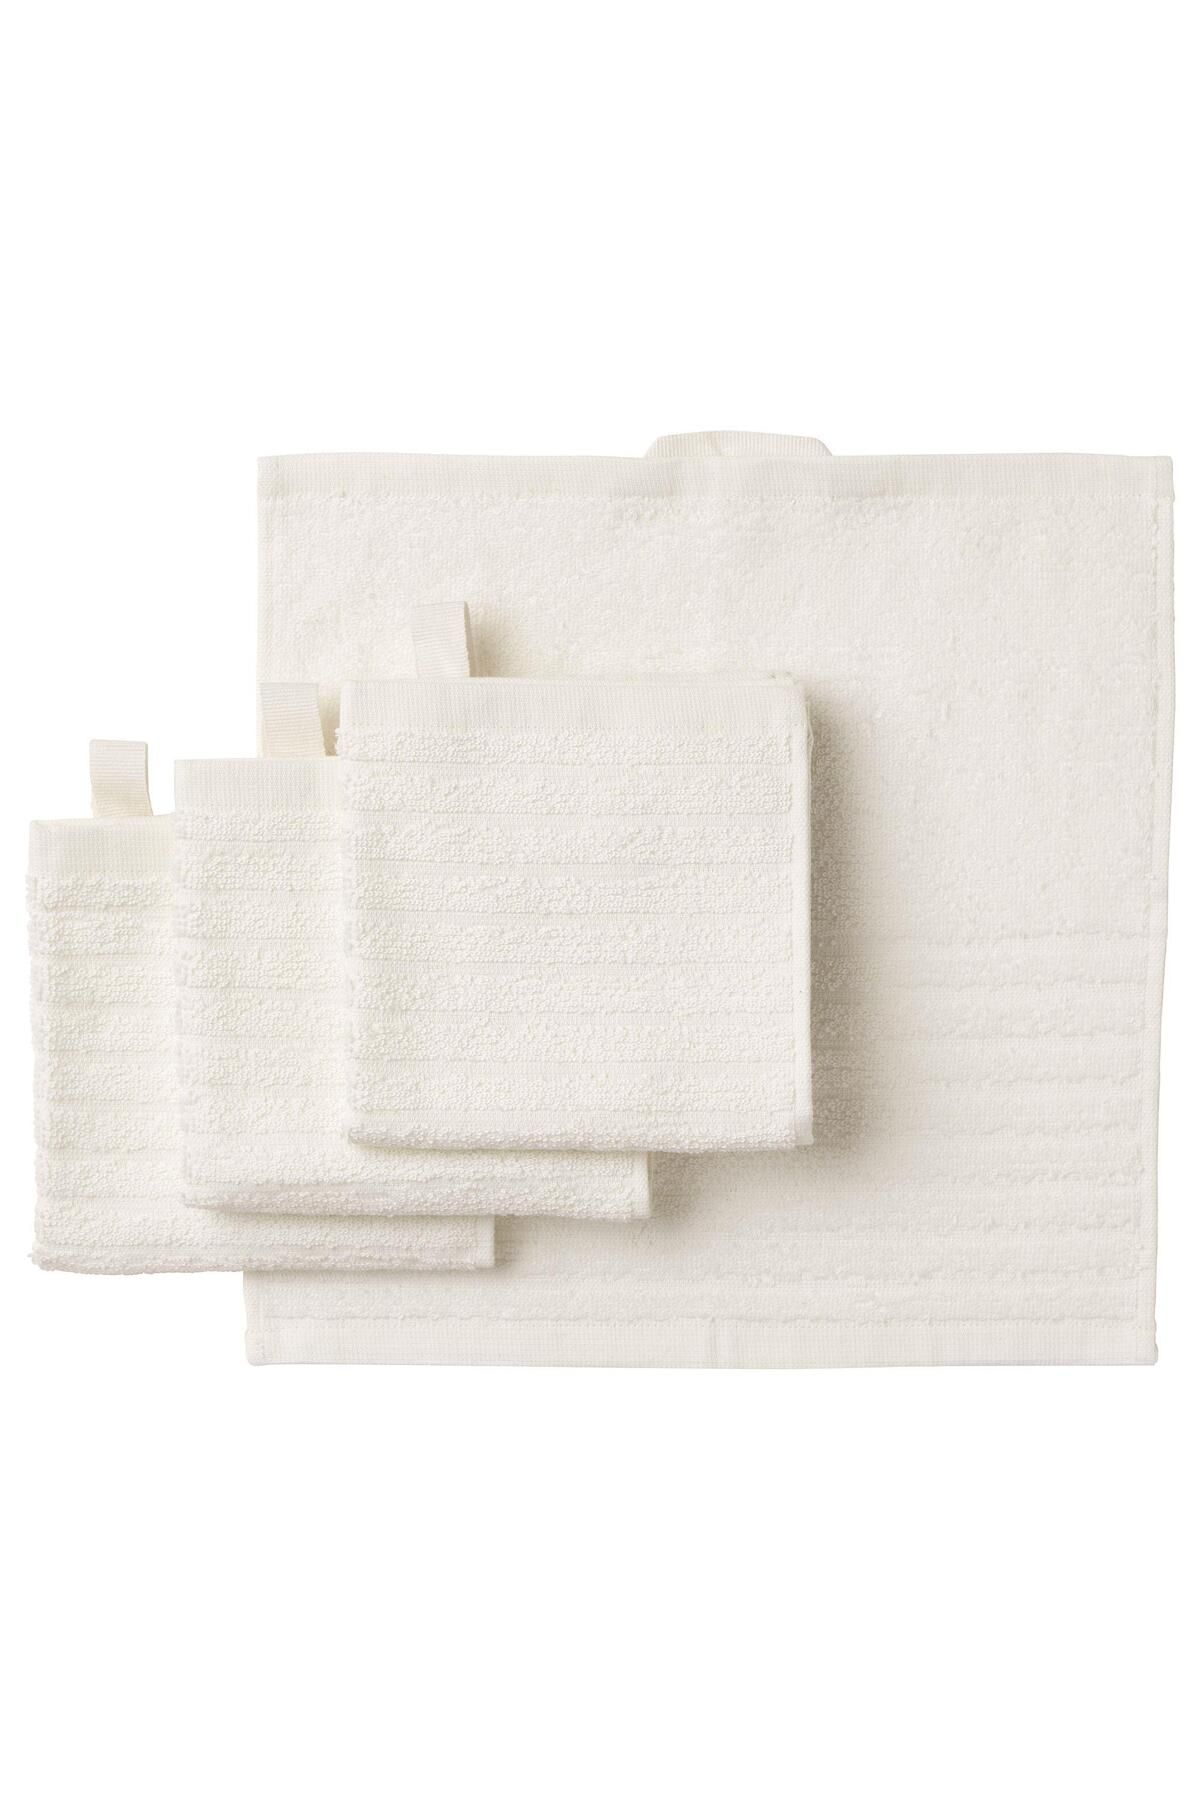 IKEA 4 Adet Banyo-mutfak El Havlusu Beyaz Renk Meridyendukkan 30x30 Cm, 4 Lü